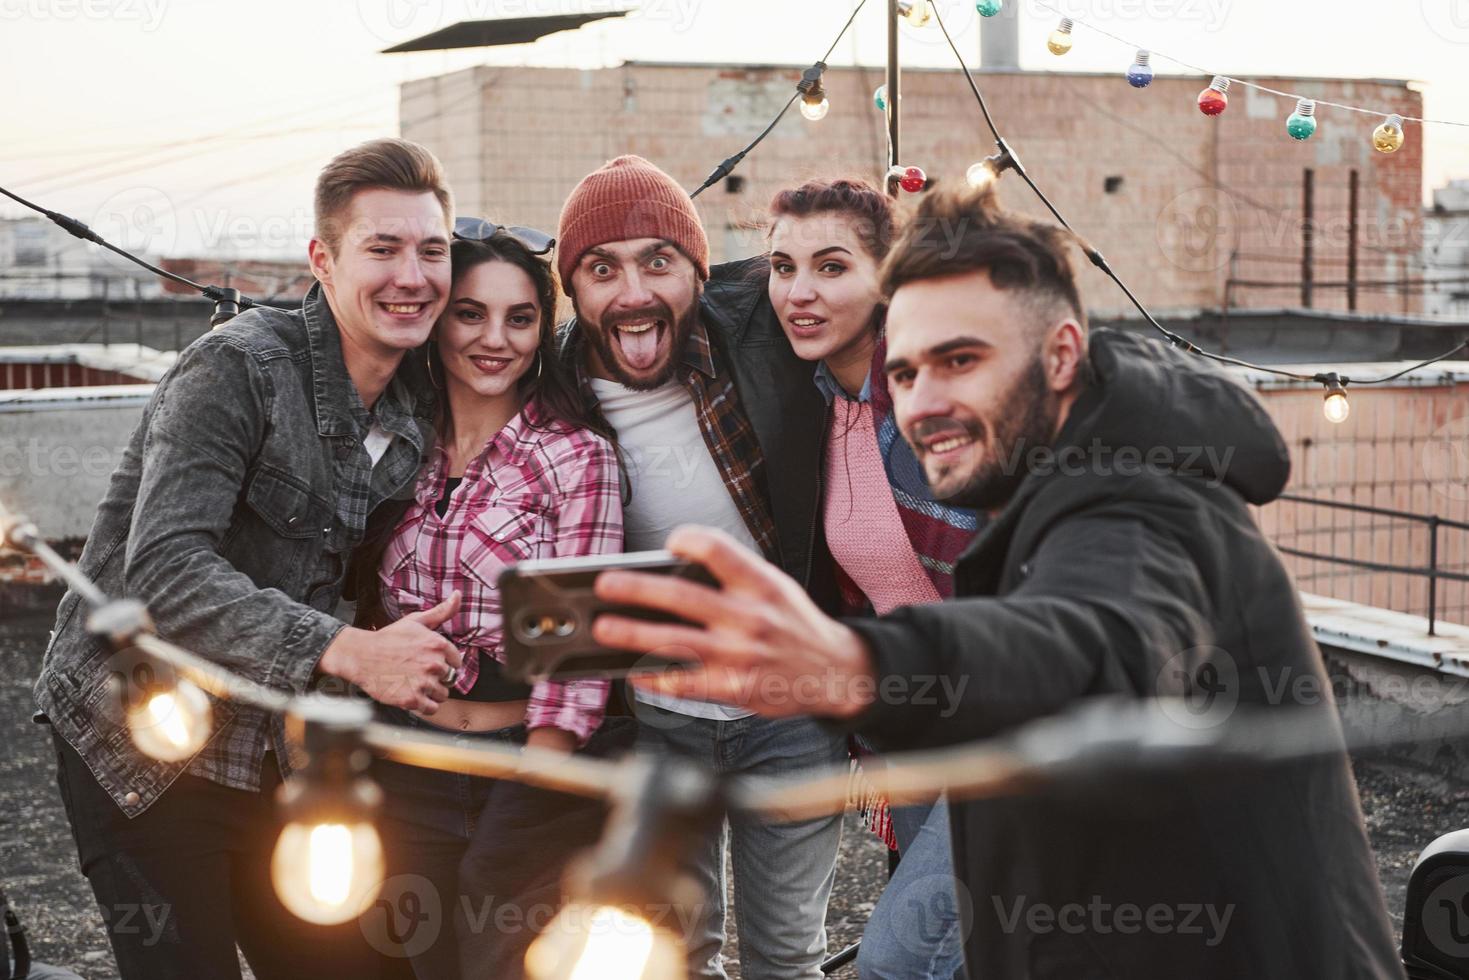 le gars au milieu fait une grimace. groupe de jeunes amis joyeux s'amusant, s'embrassant et prenant un selfie sur le toit avec des ampoules décoratives photo